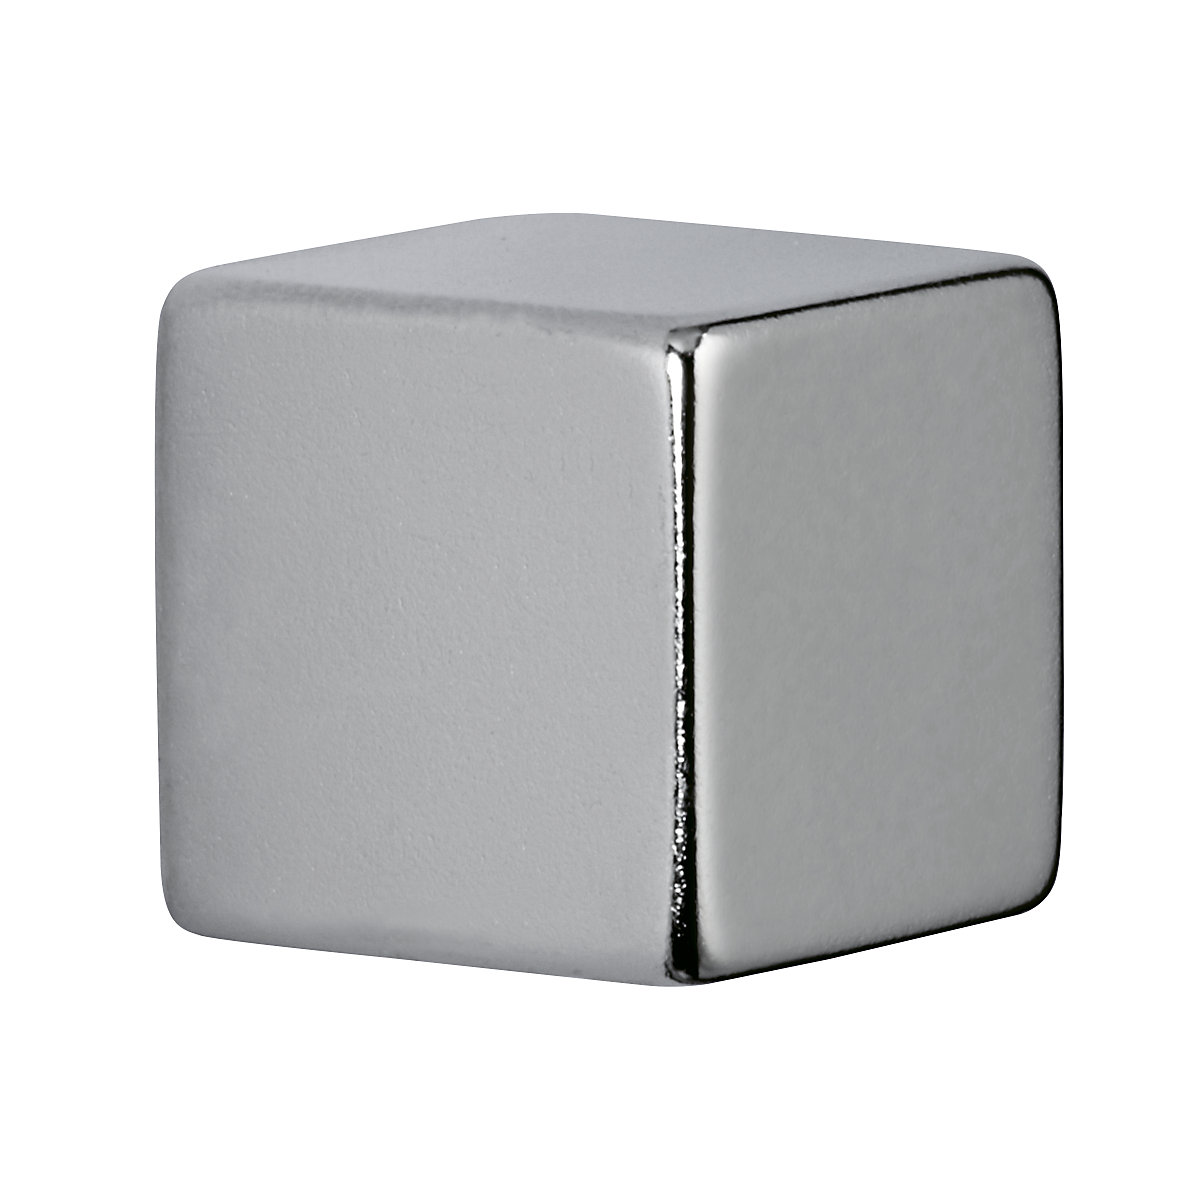 Neodymium cube magnet – MAUL